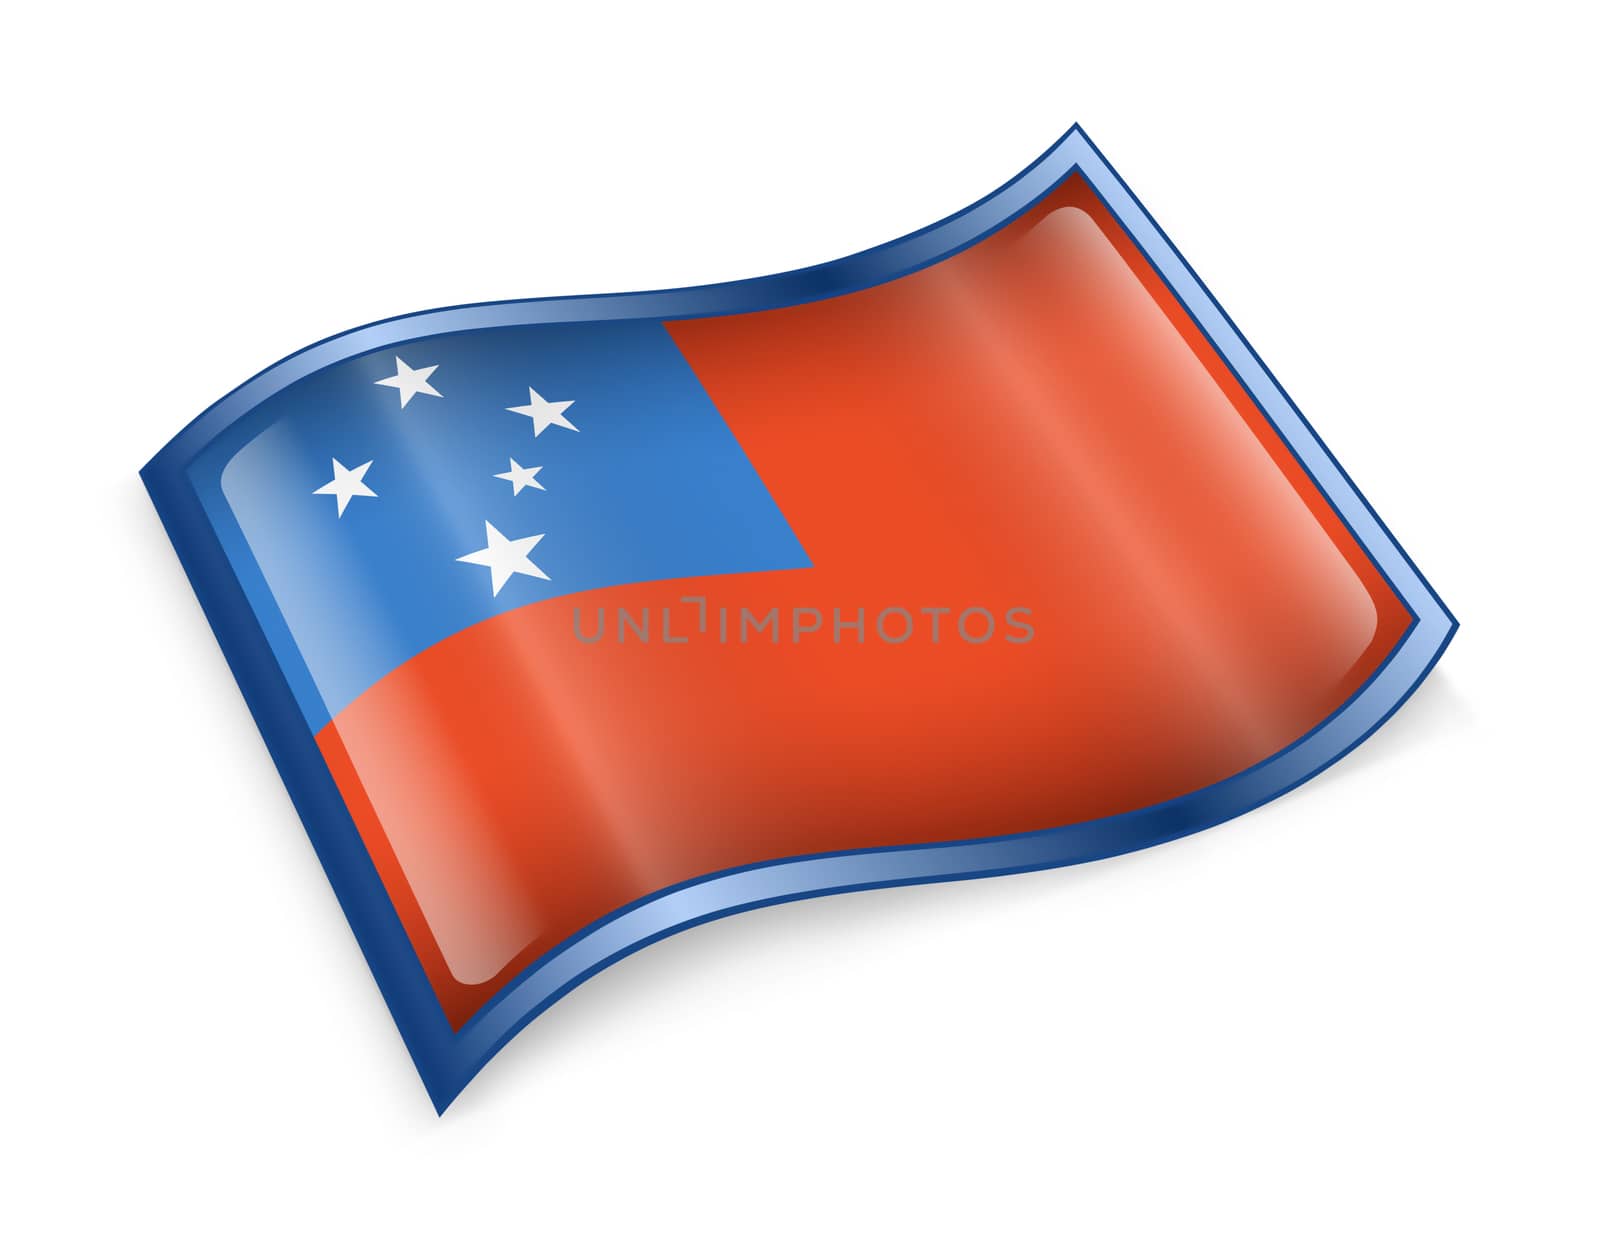 Samoa Flag icon, isolated on white background.